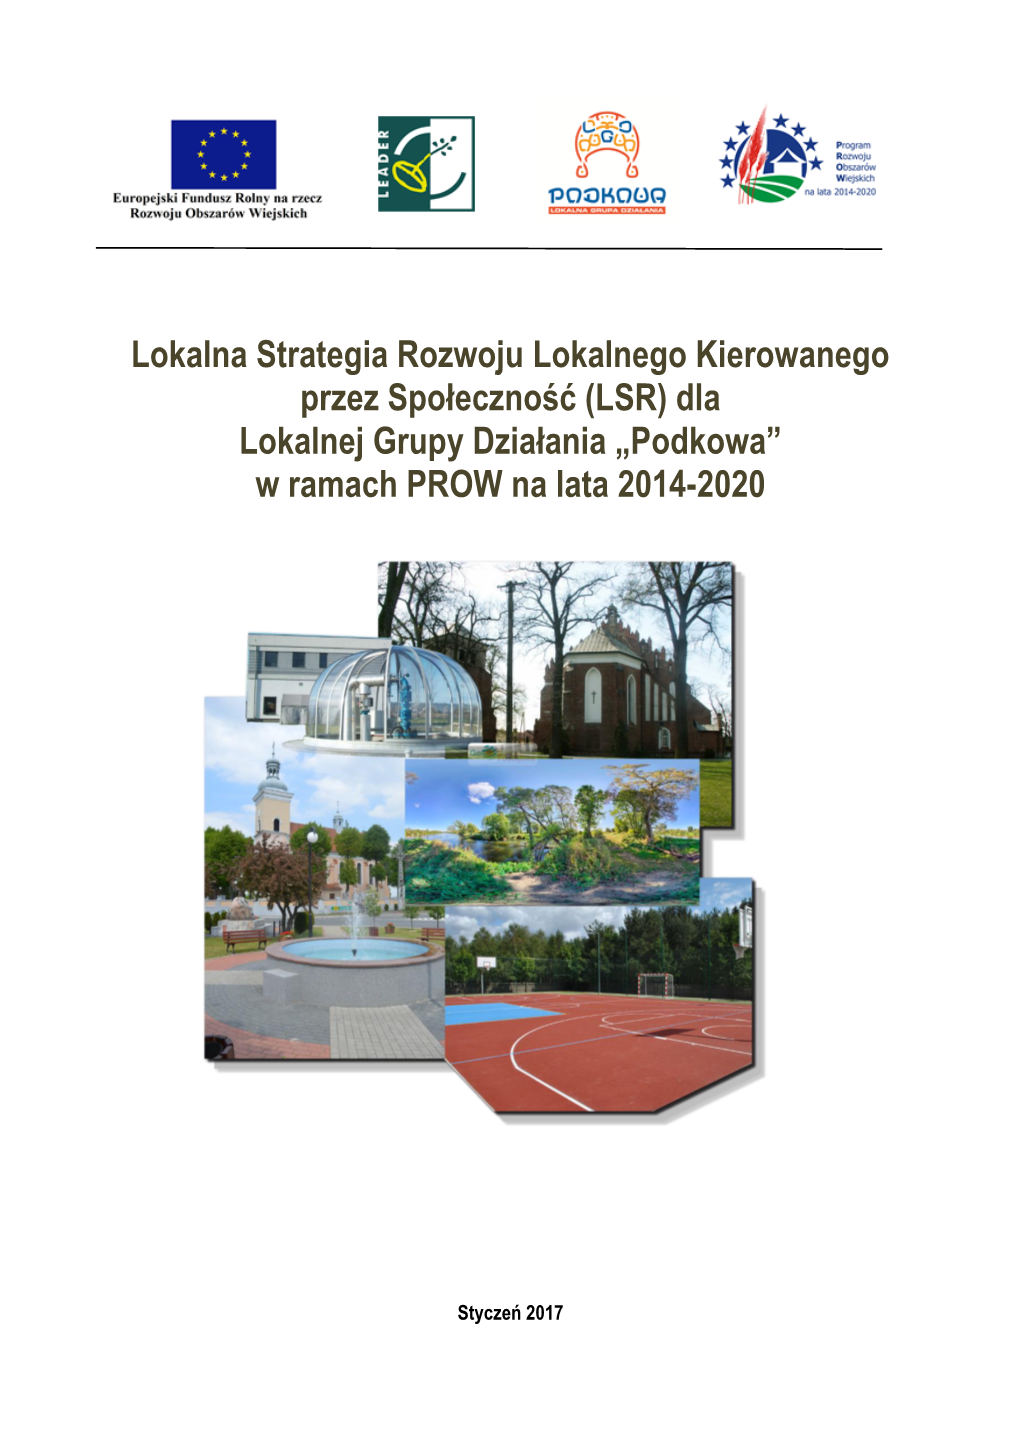 Lokalna Strategia Rozwoju Lokalnego Kierowanego Przez Społeczność (LSR) Dla Lokalnej Grupy Działania „Podkowa” W Ramach PROW Na Lata 2014-2020